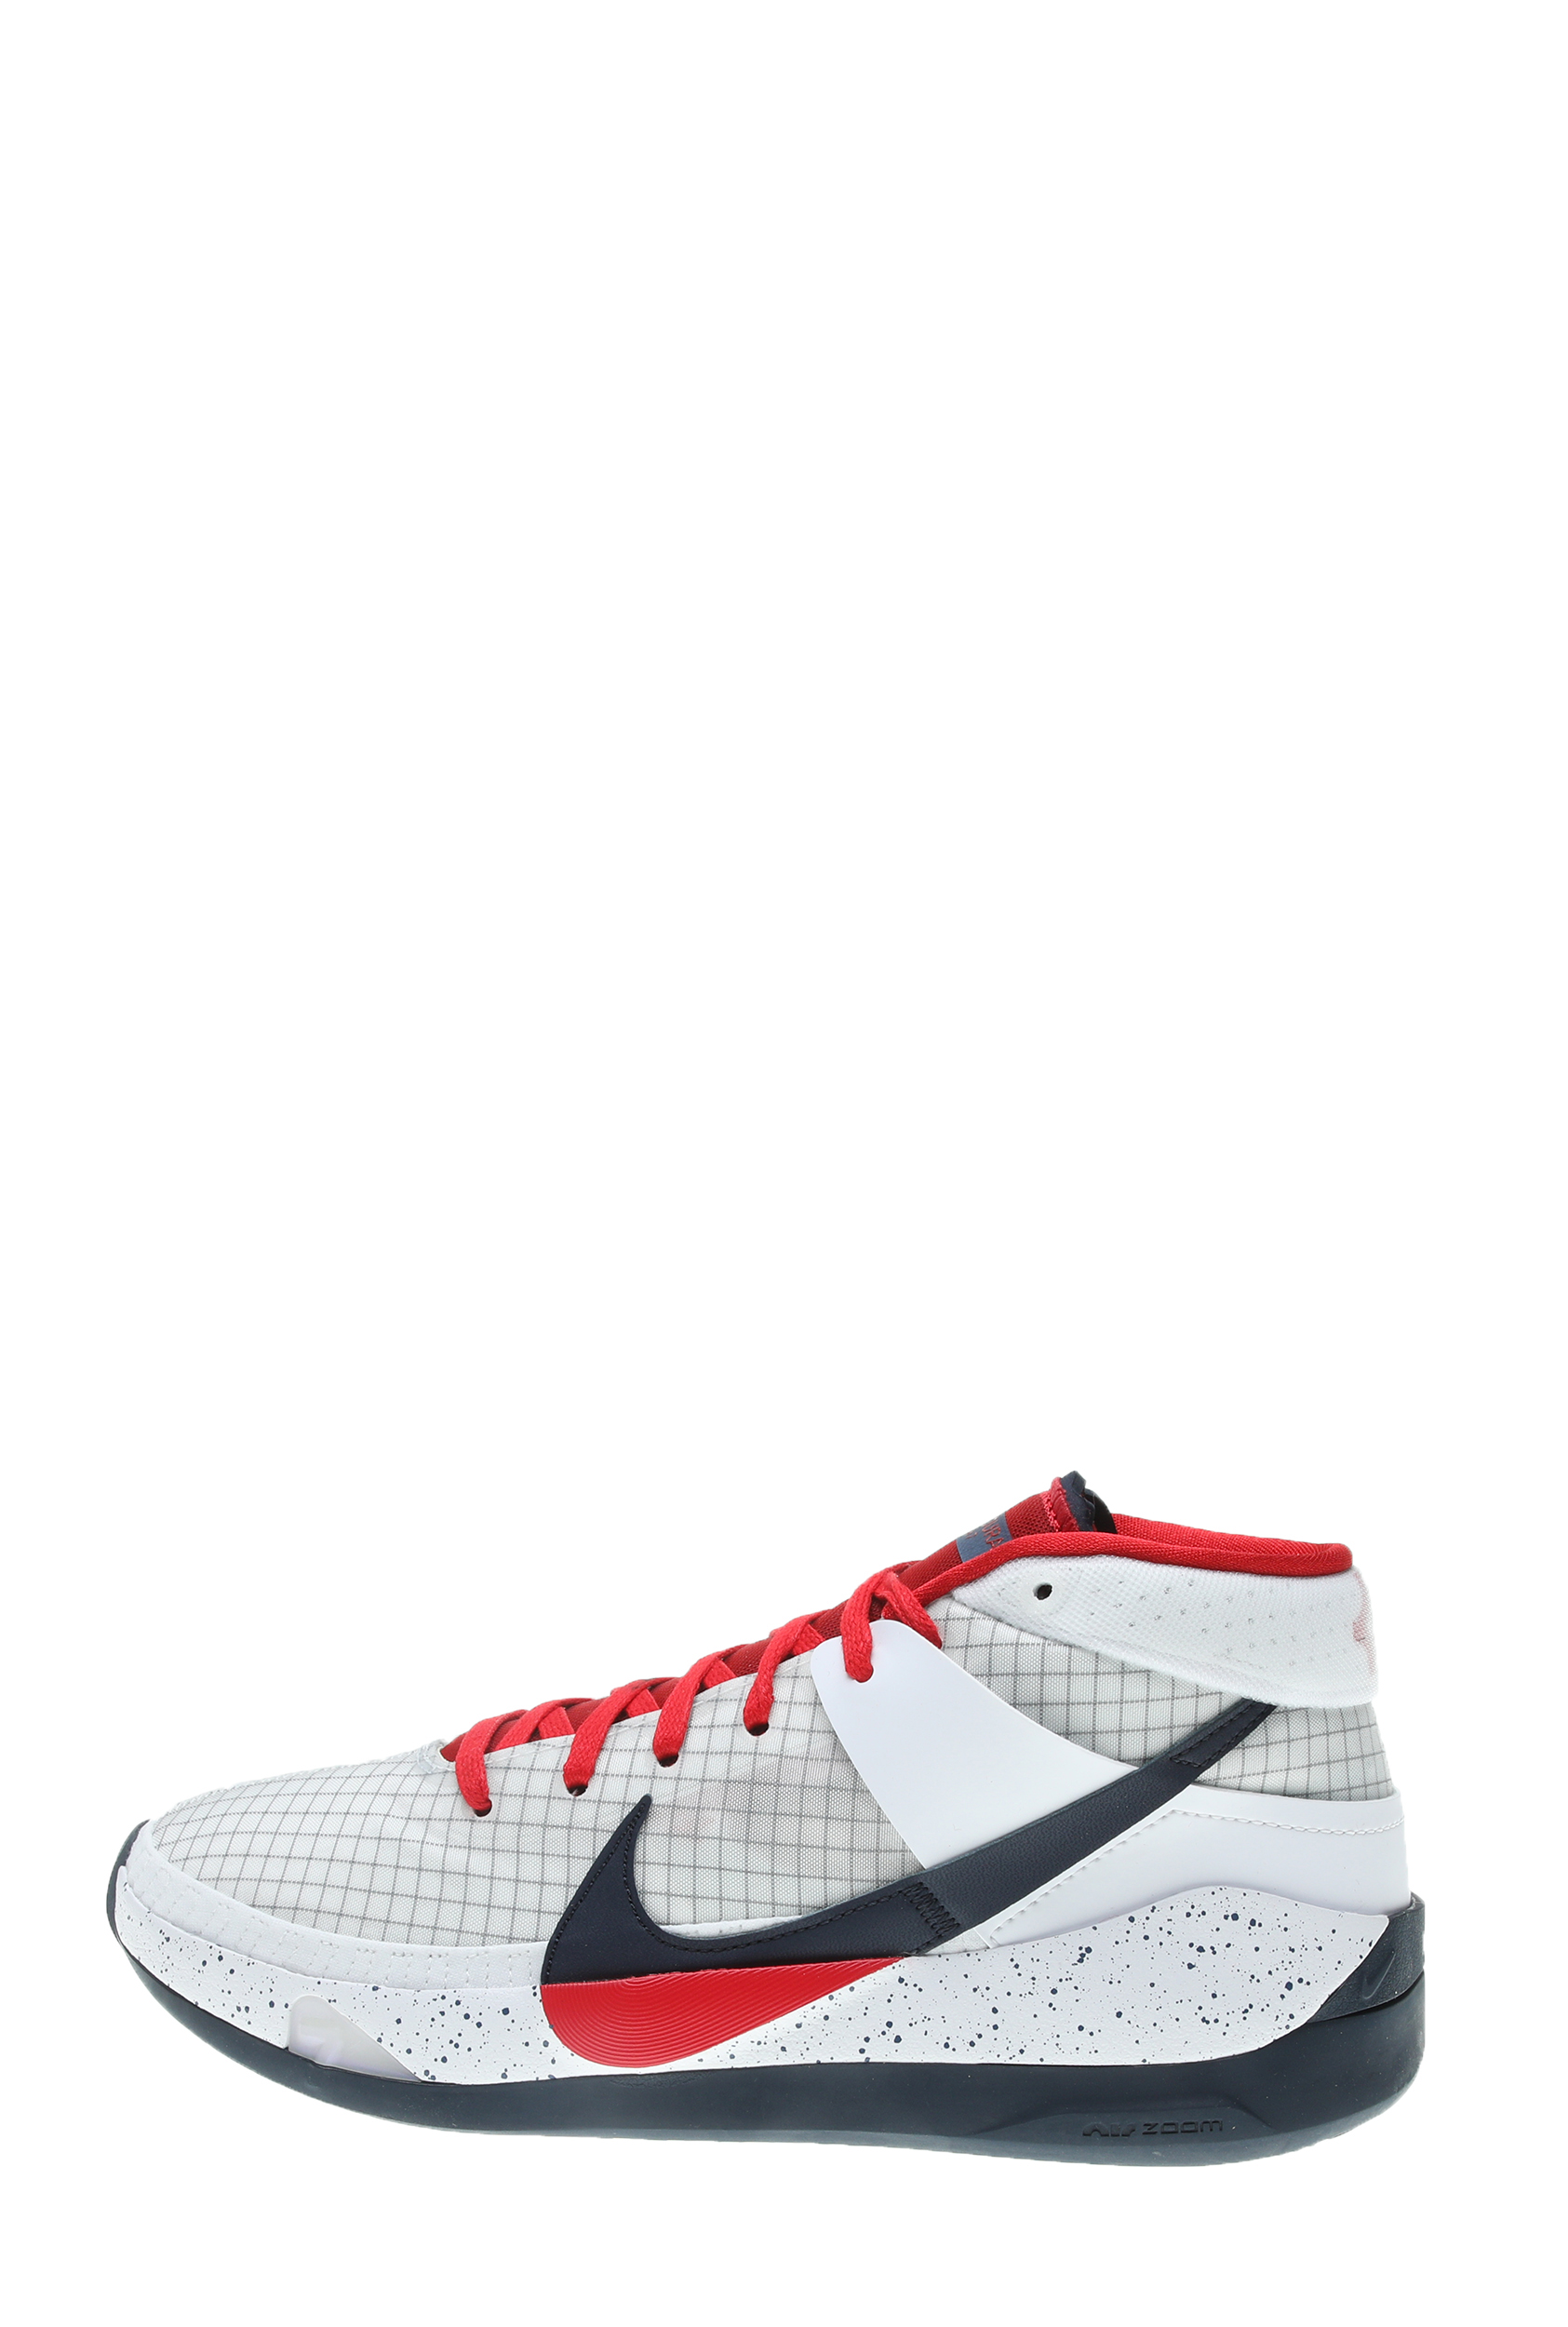 Ανδρικά/Παπούτσια/Αθλητικά/Basketball NIKE - Ανδρικά παπούτσια basketball ΝΙΚΕ KD13 λευκά